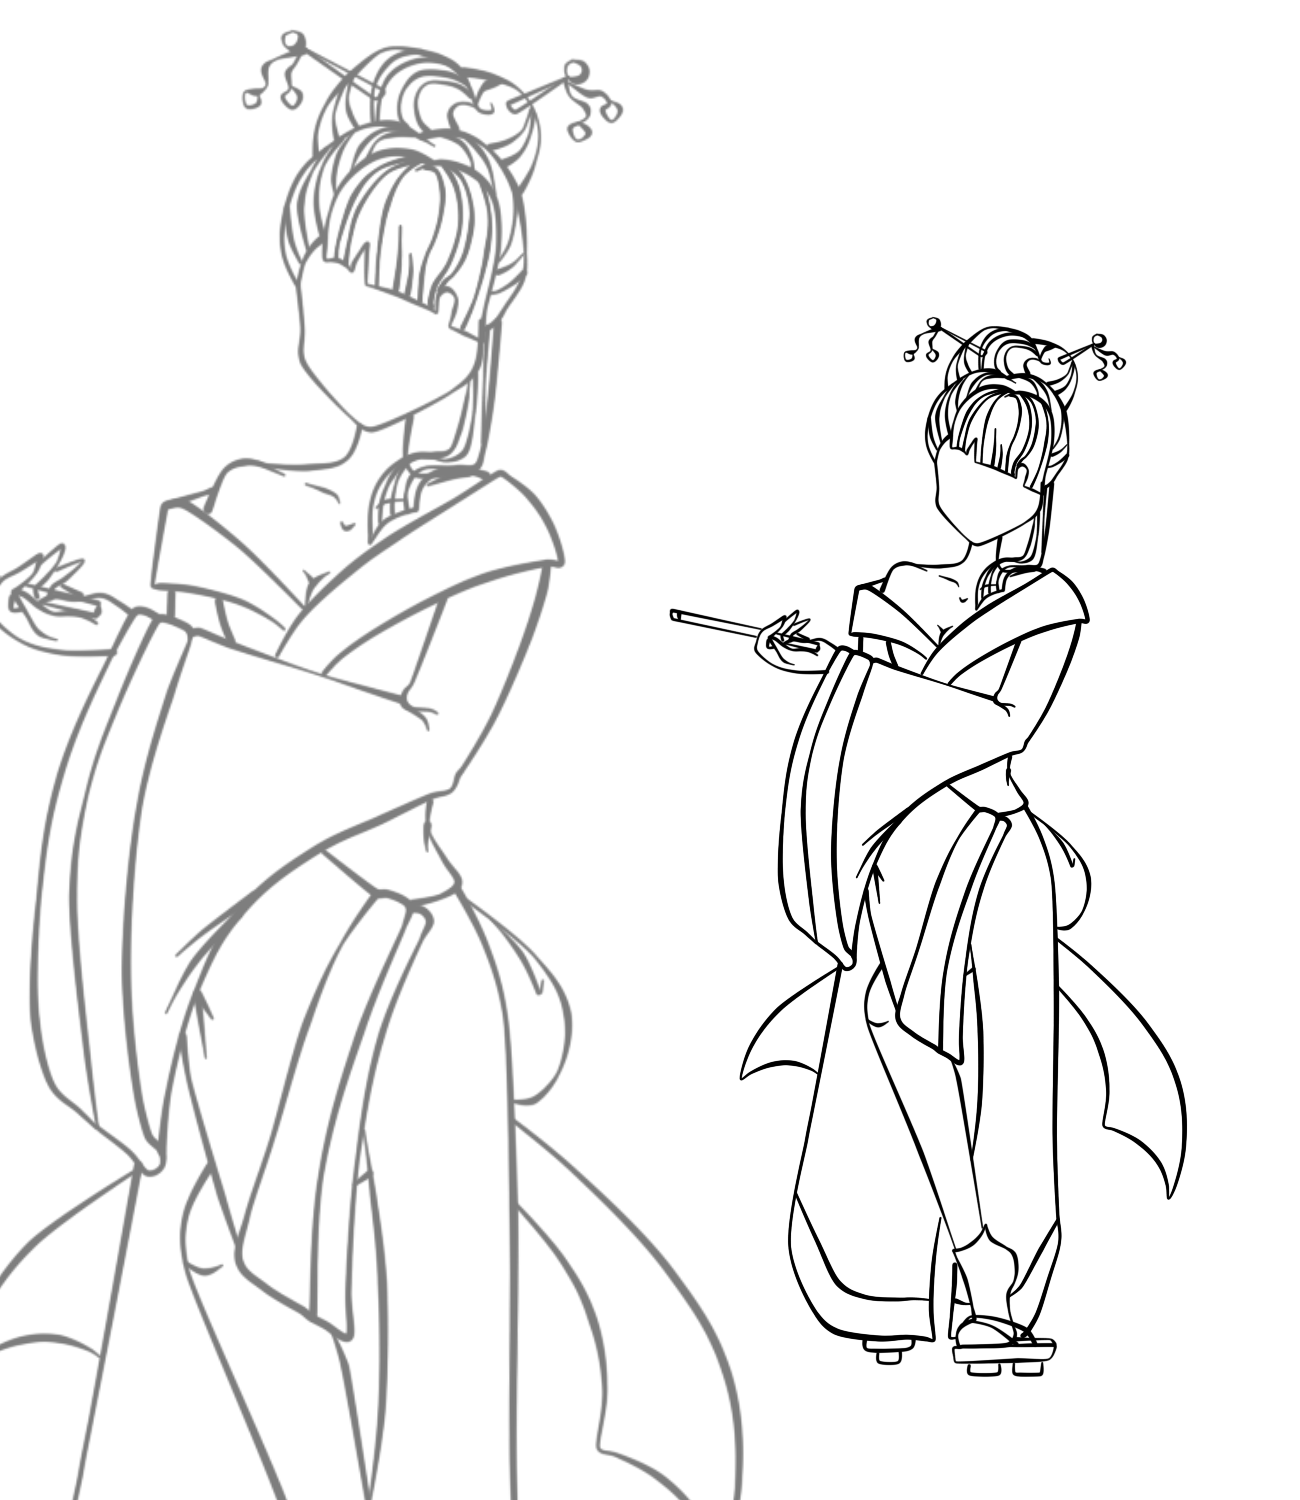 Раскраска Муза в кимоно | Раскраски Винкс Муза (Winx Muza). Раскраска Муза из мультика Винкс